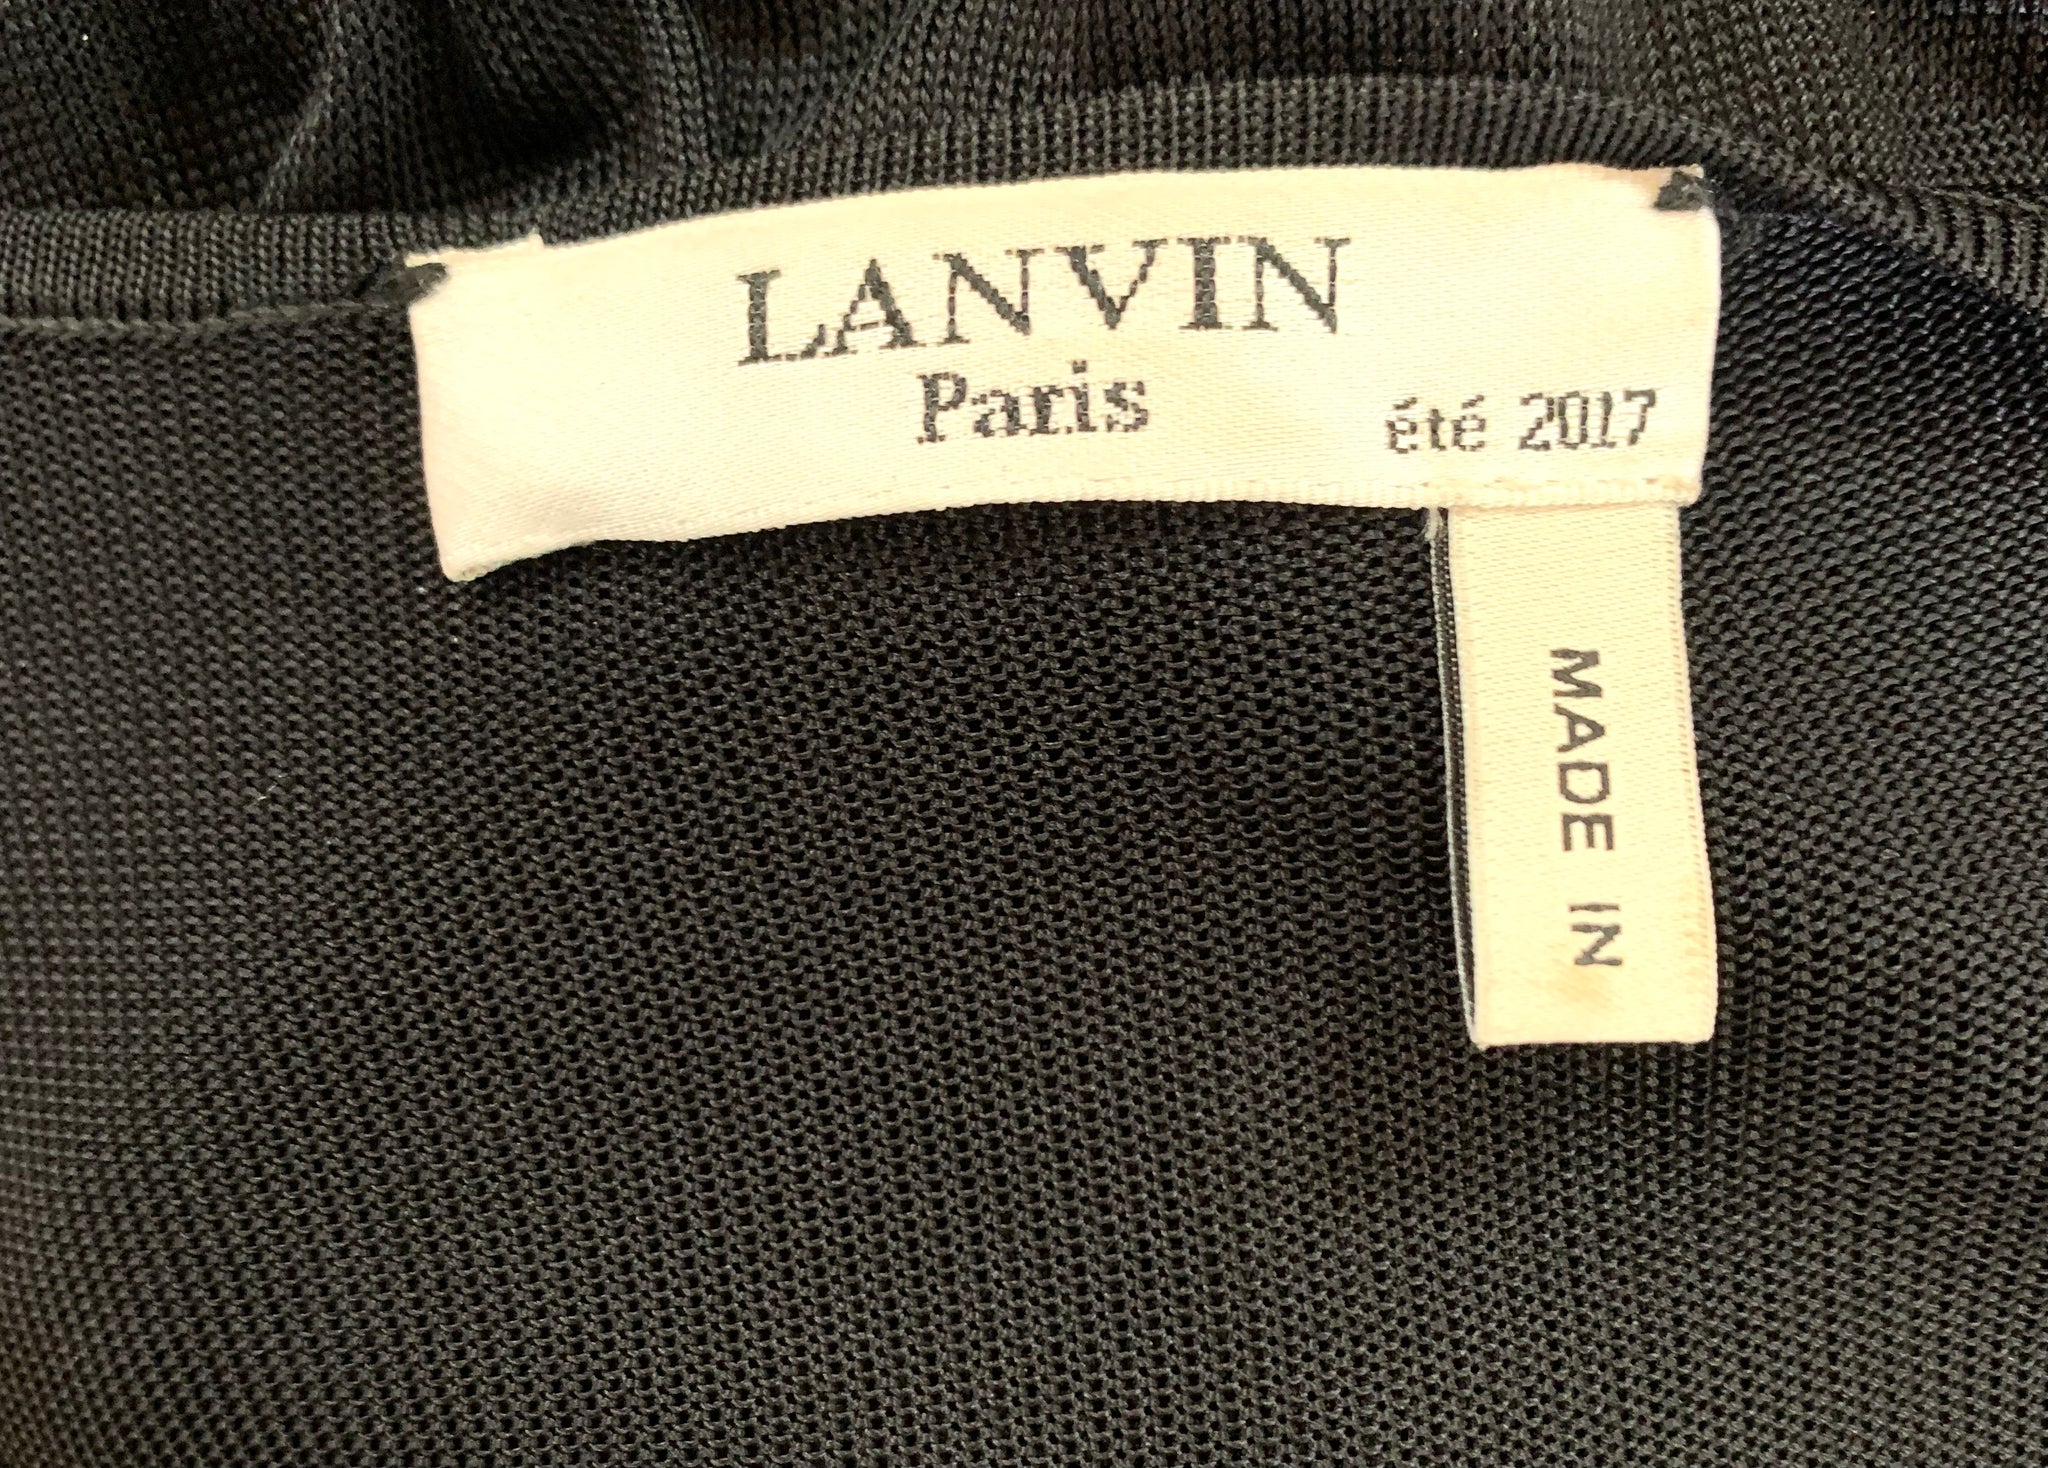   Lanvin 2017  V-Neck Sporty Gold Lurex Dress with Sheer Back LABEL 5 of 5